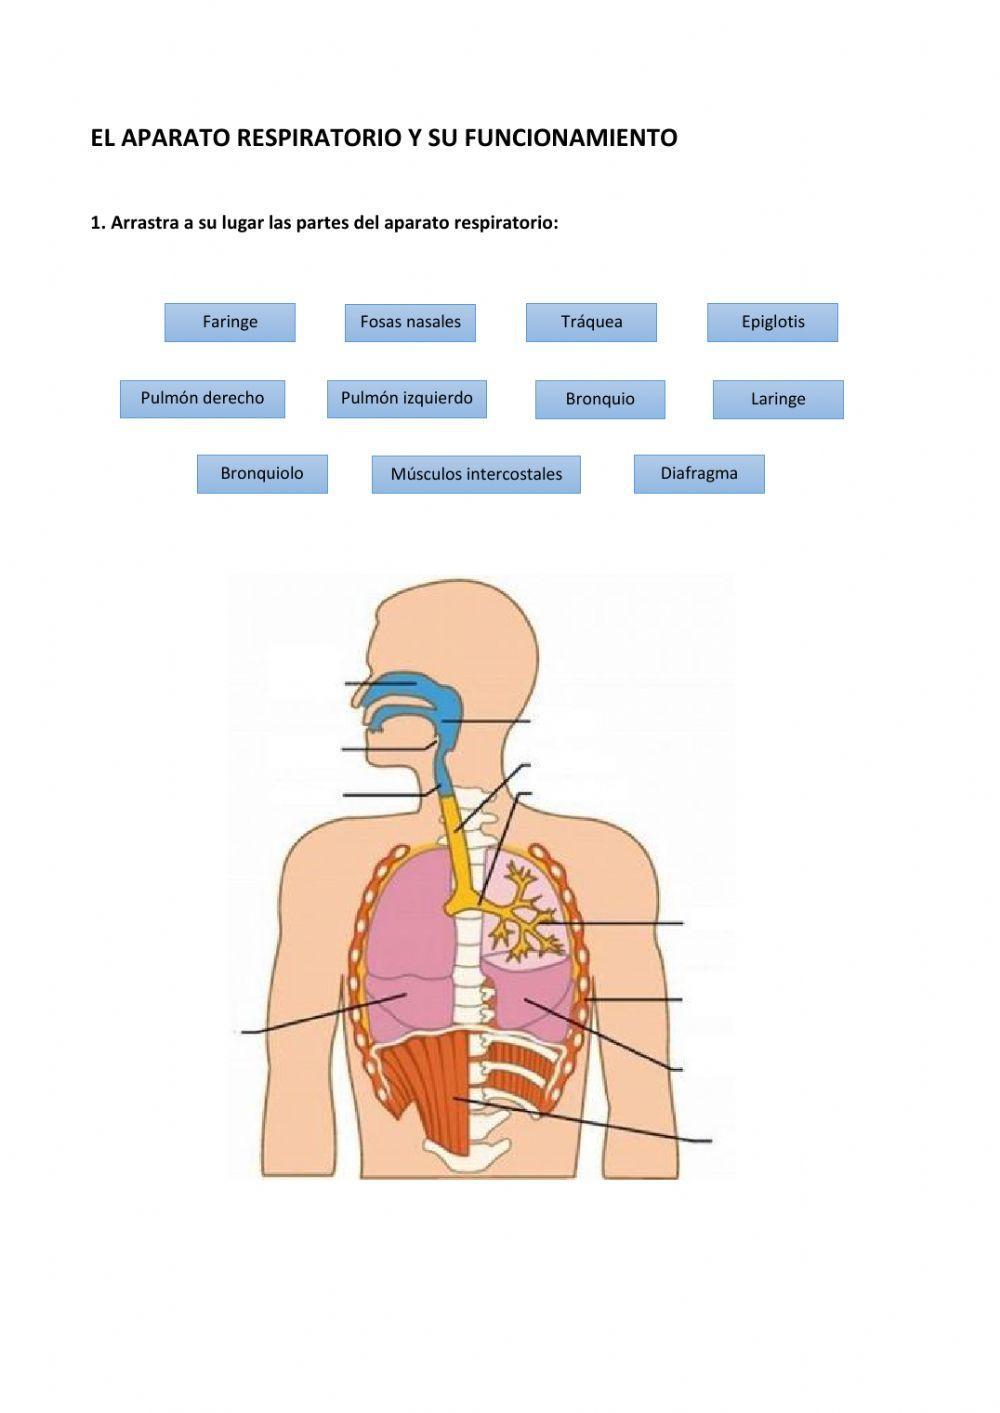 El aparato respiratorio y su funcionamiento